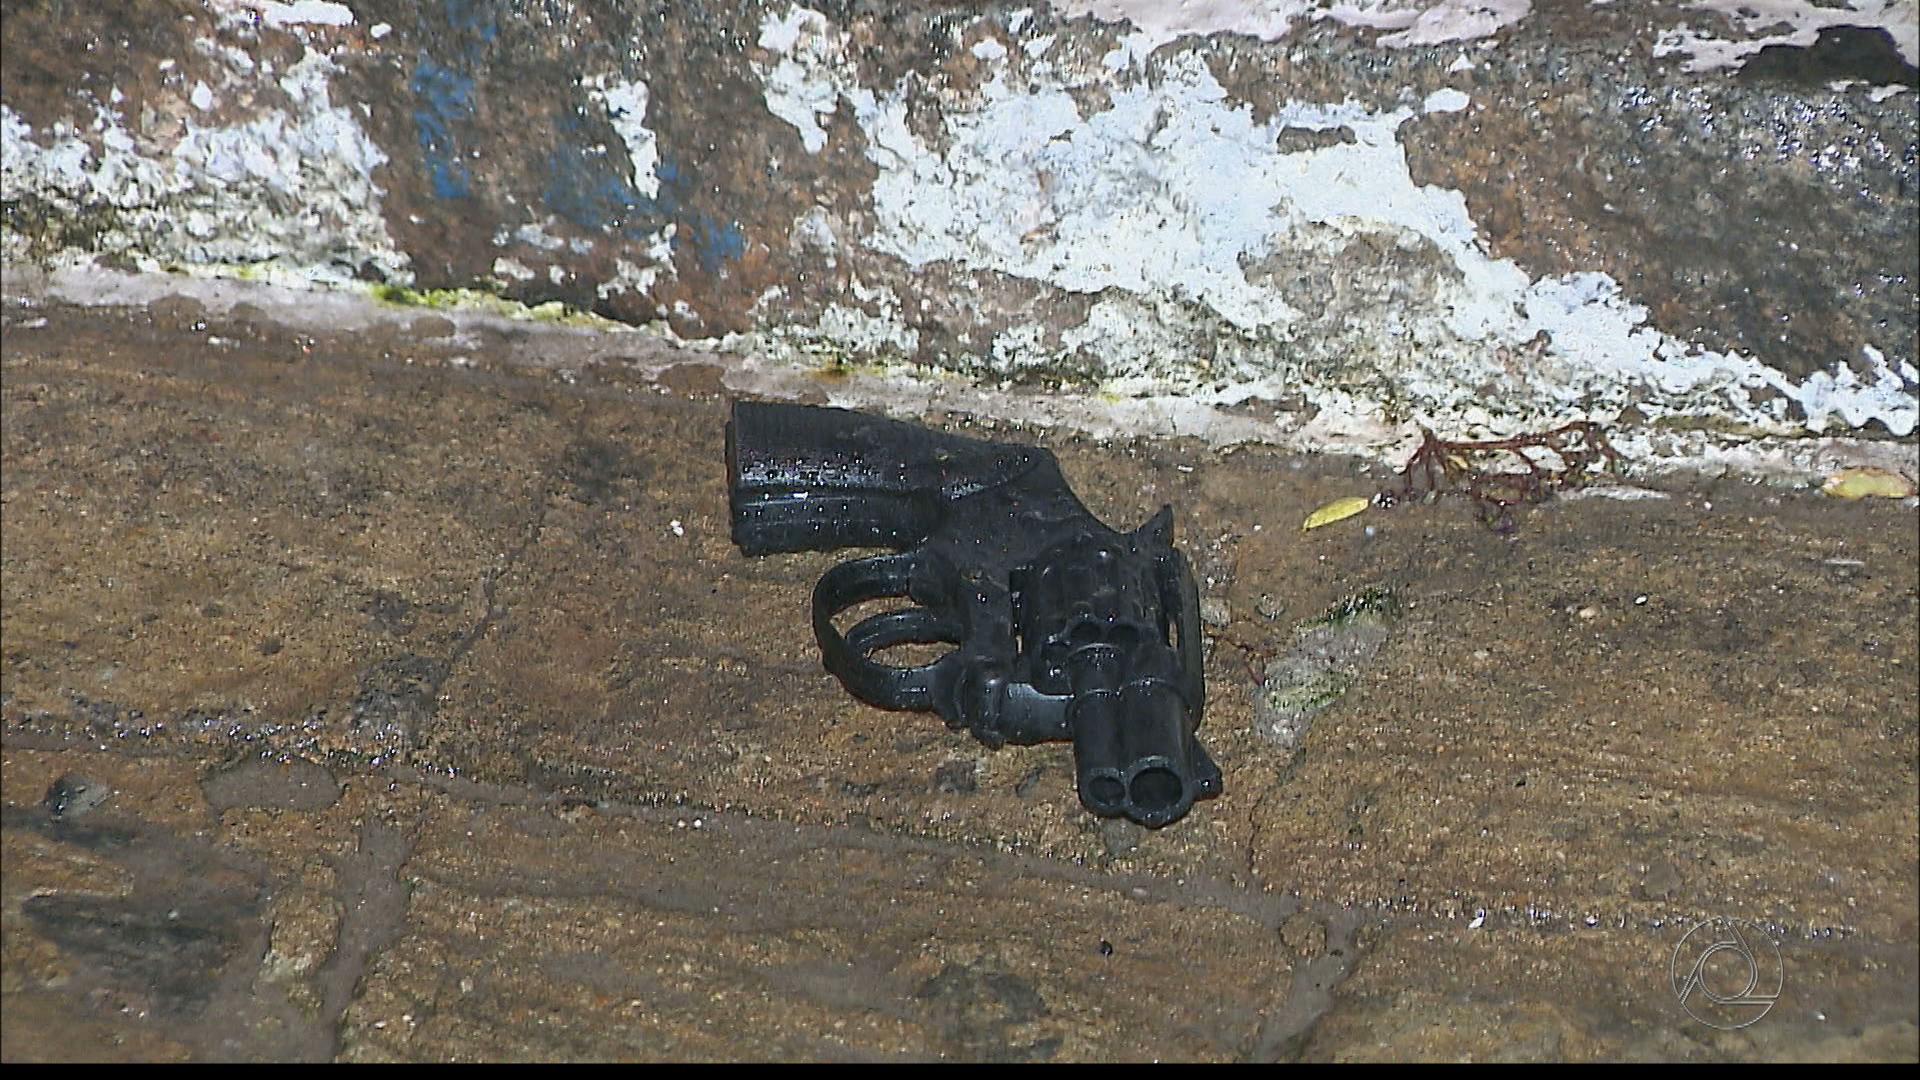 Arma de brinquedo usada pelo suspeito morto foi encontrada próximo ao corpo